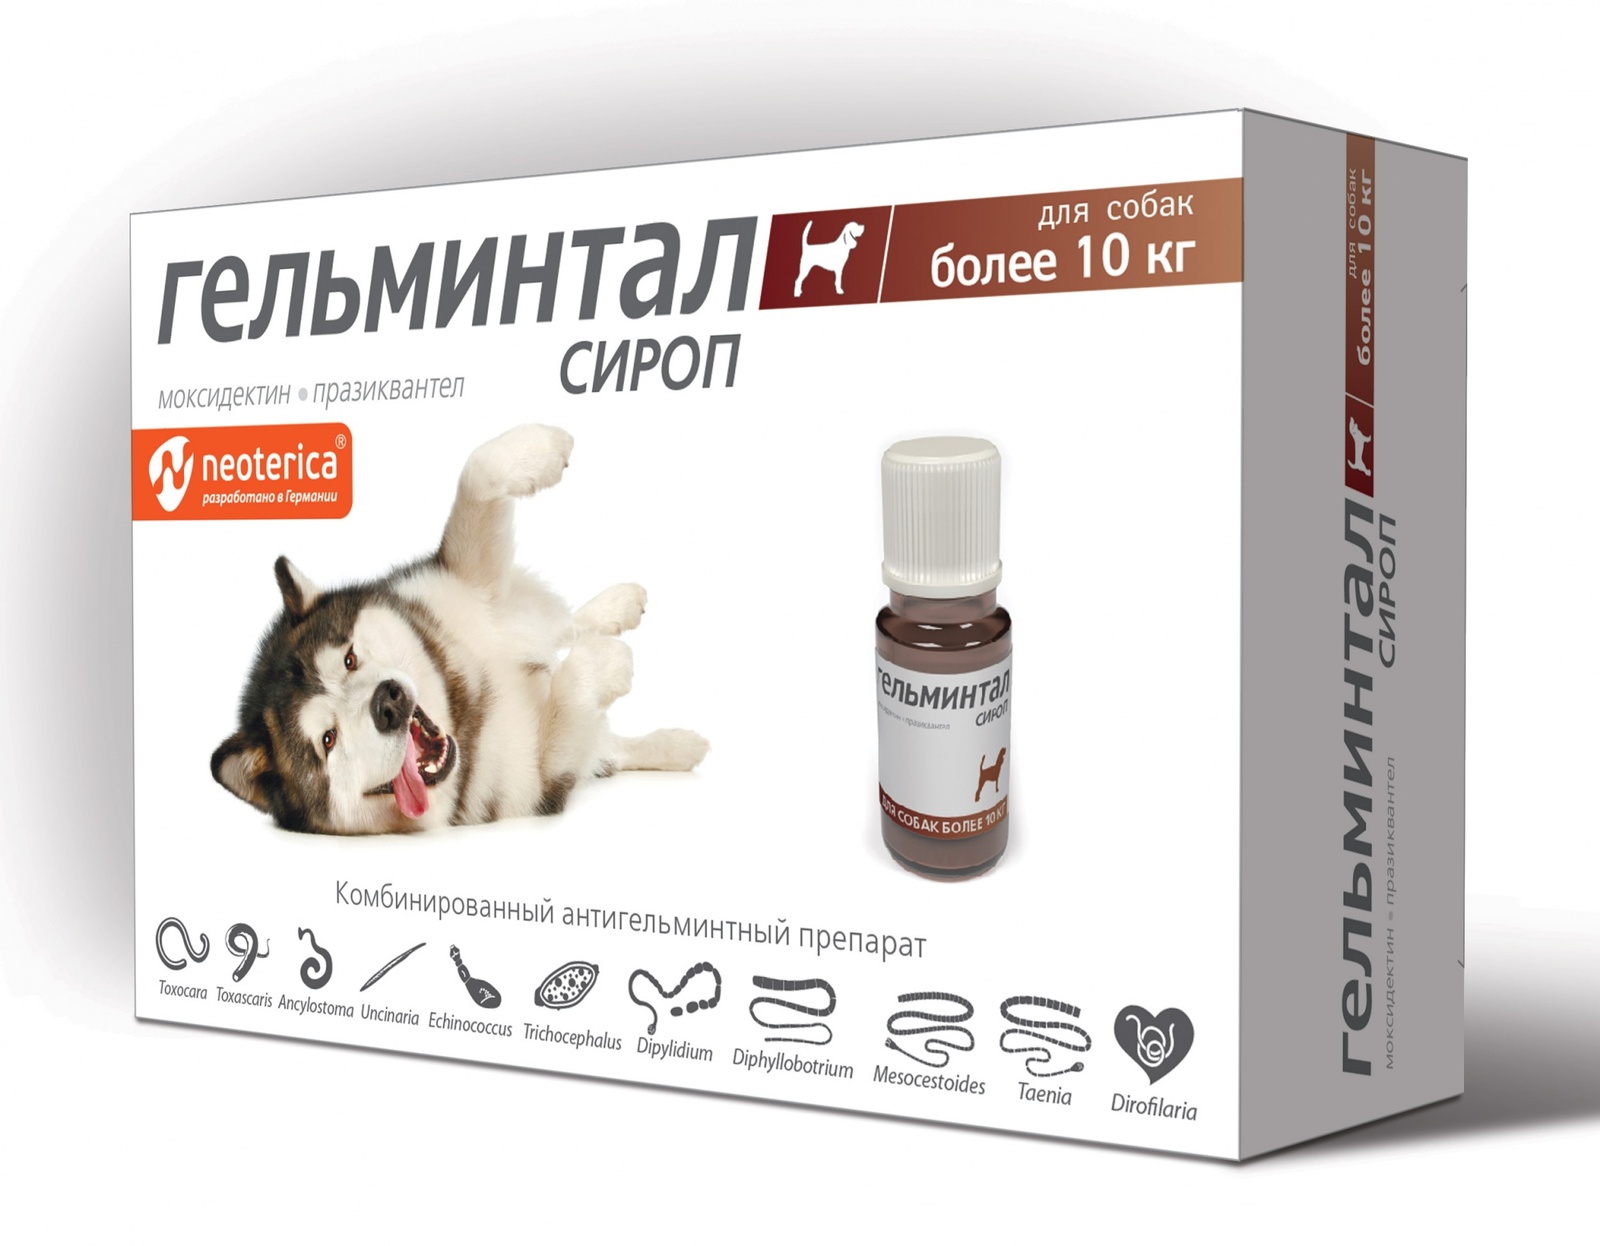 Гельминтал Гельминтал сироп от глистов для собак более 10 кг, 10 мл (60 г) гельминтал для собак более 10кг сироп 10мл